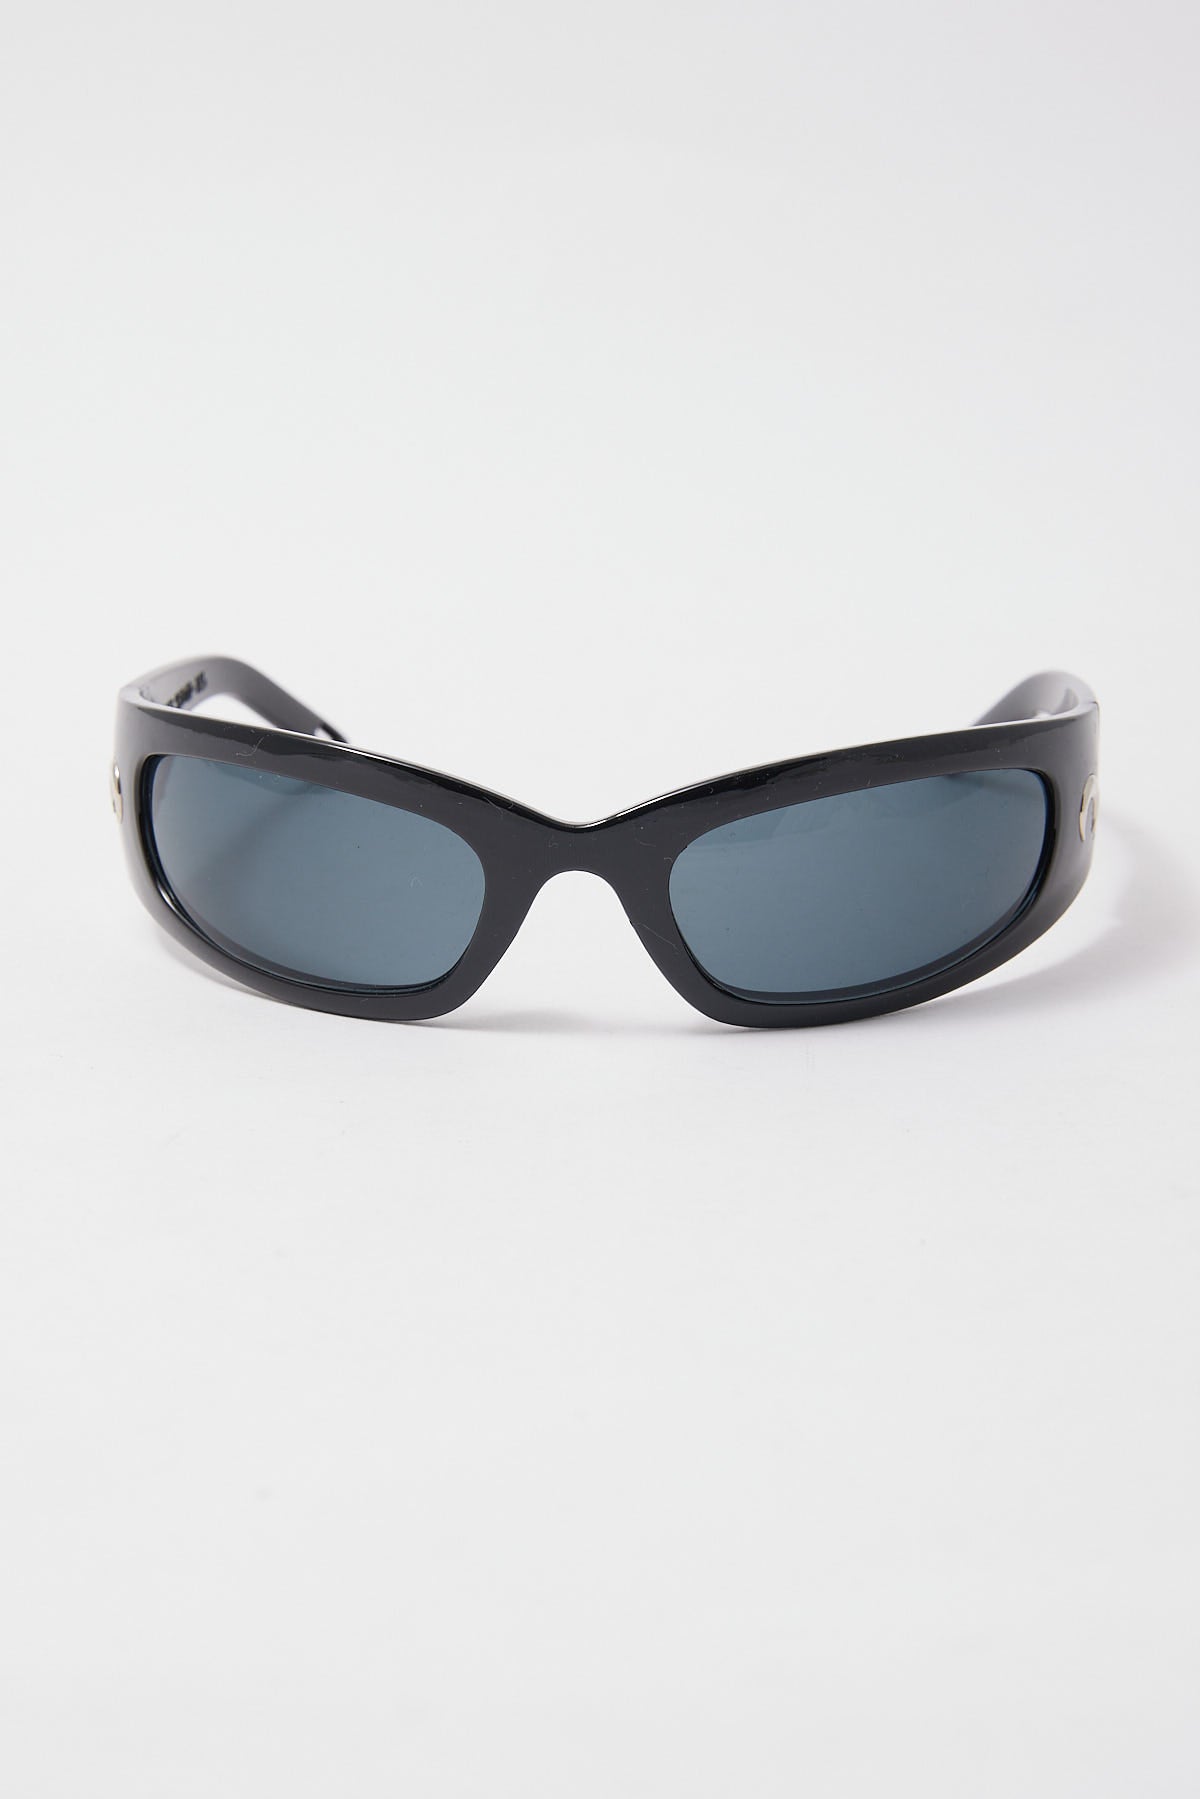 Angels Whisper Leta Sunglasses Black/ Black Lense – Universal Store